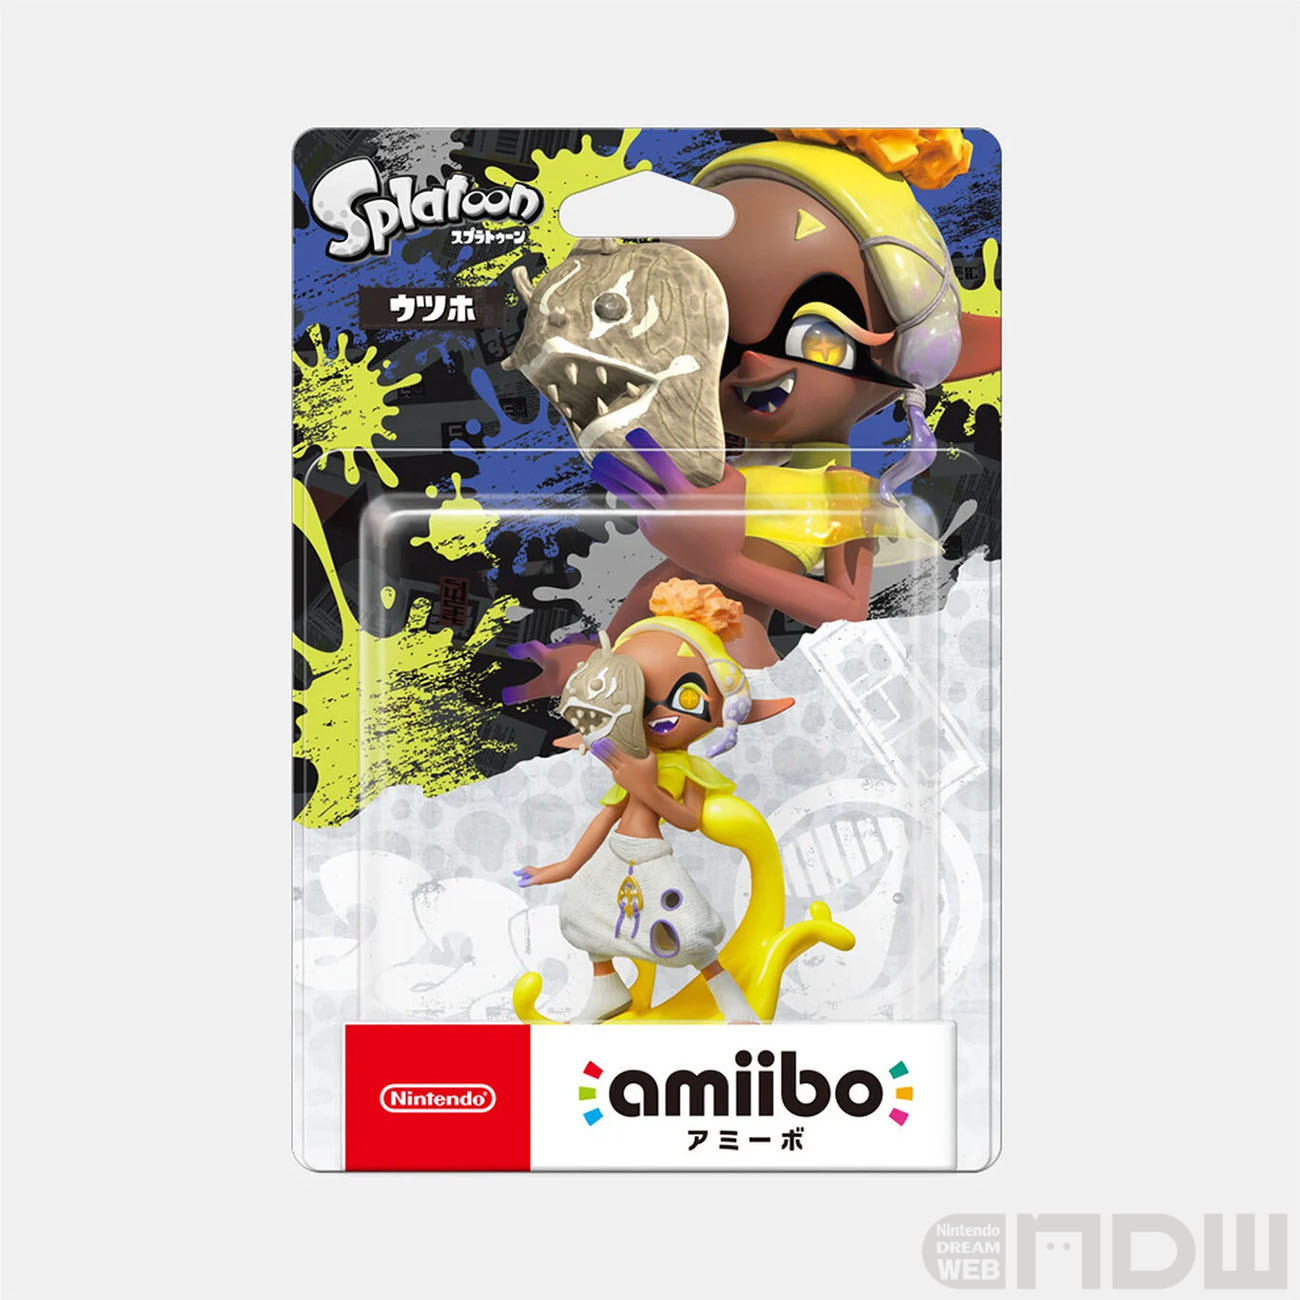 スプラトゥーン3』すりみ連合のamiiboが11月17日発売決定！ – Nintendo